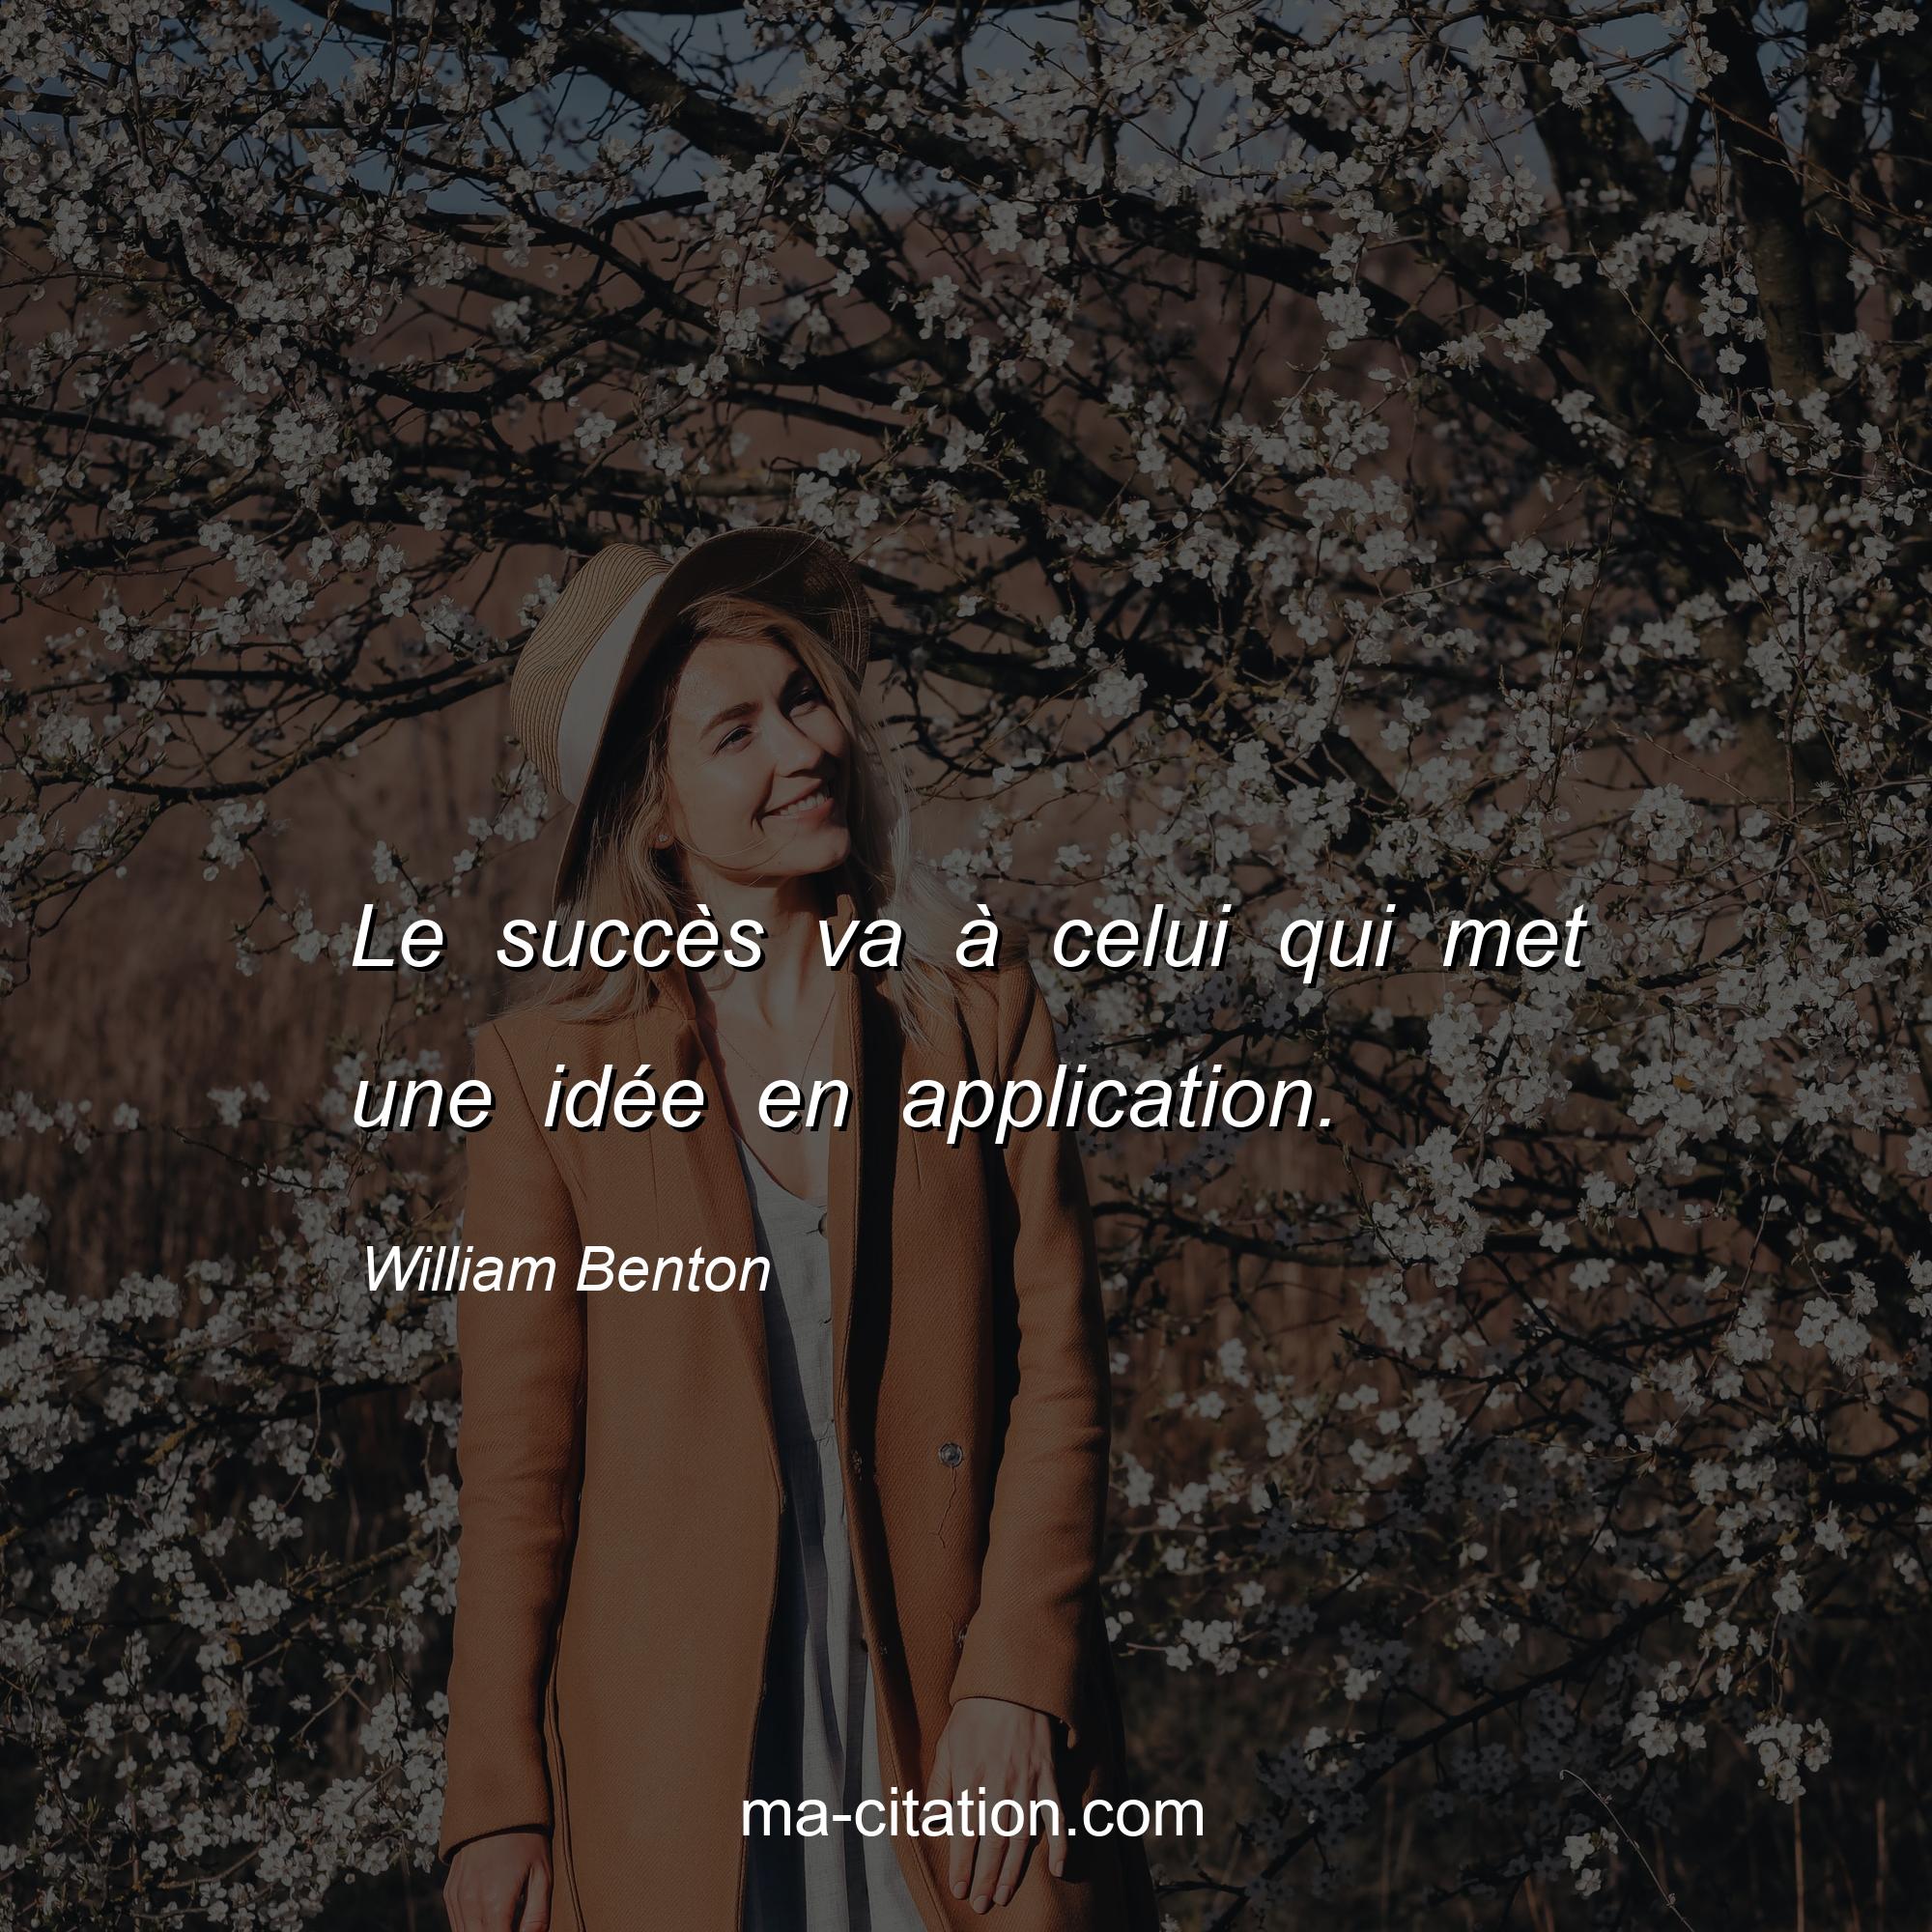 William Benton : Le succès va à celui qui met une idée en application.